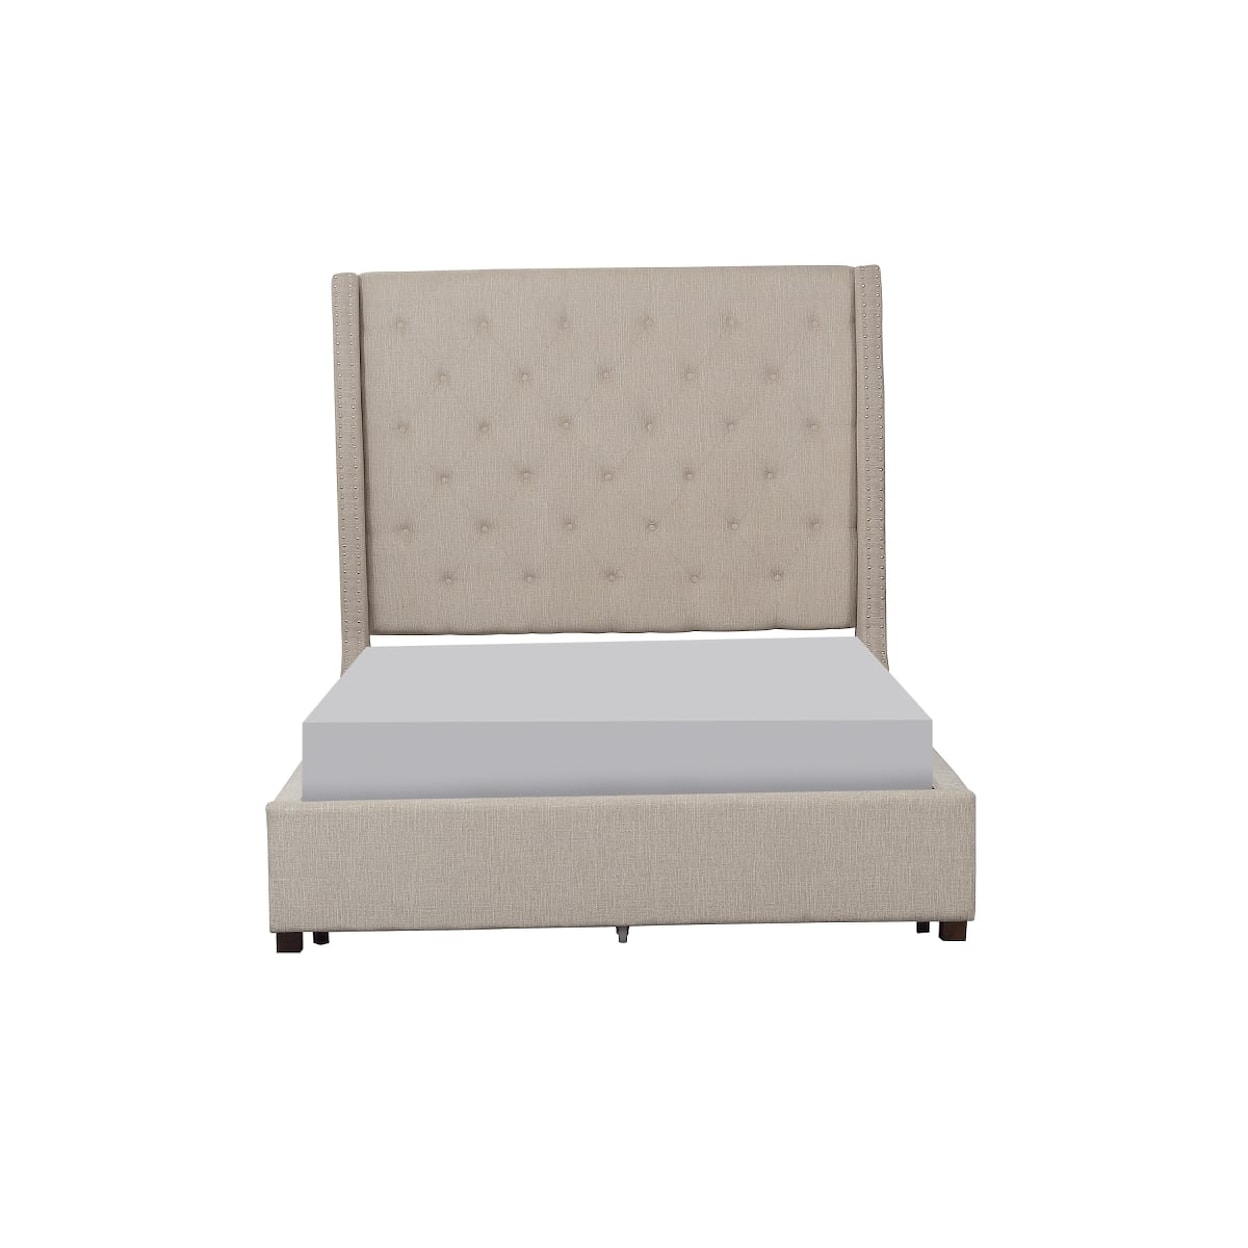 Homelegance Furniture Fairborn King  Bed